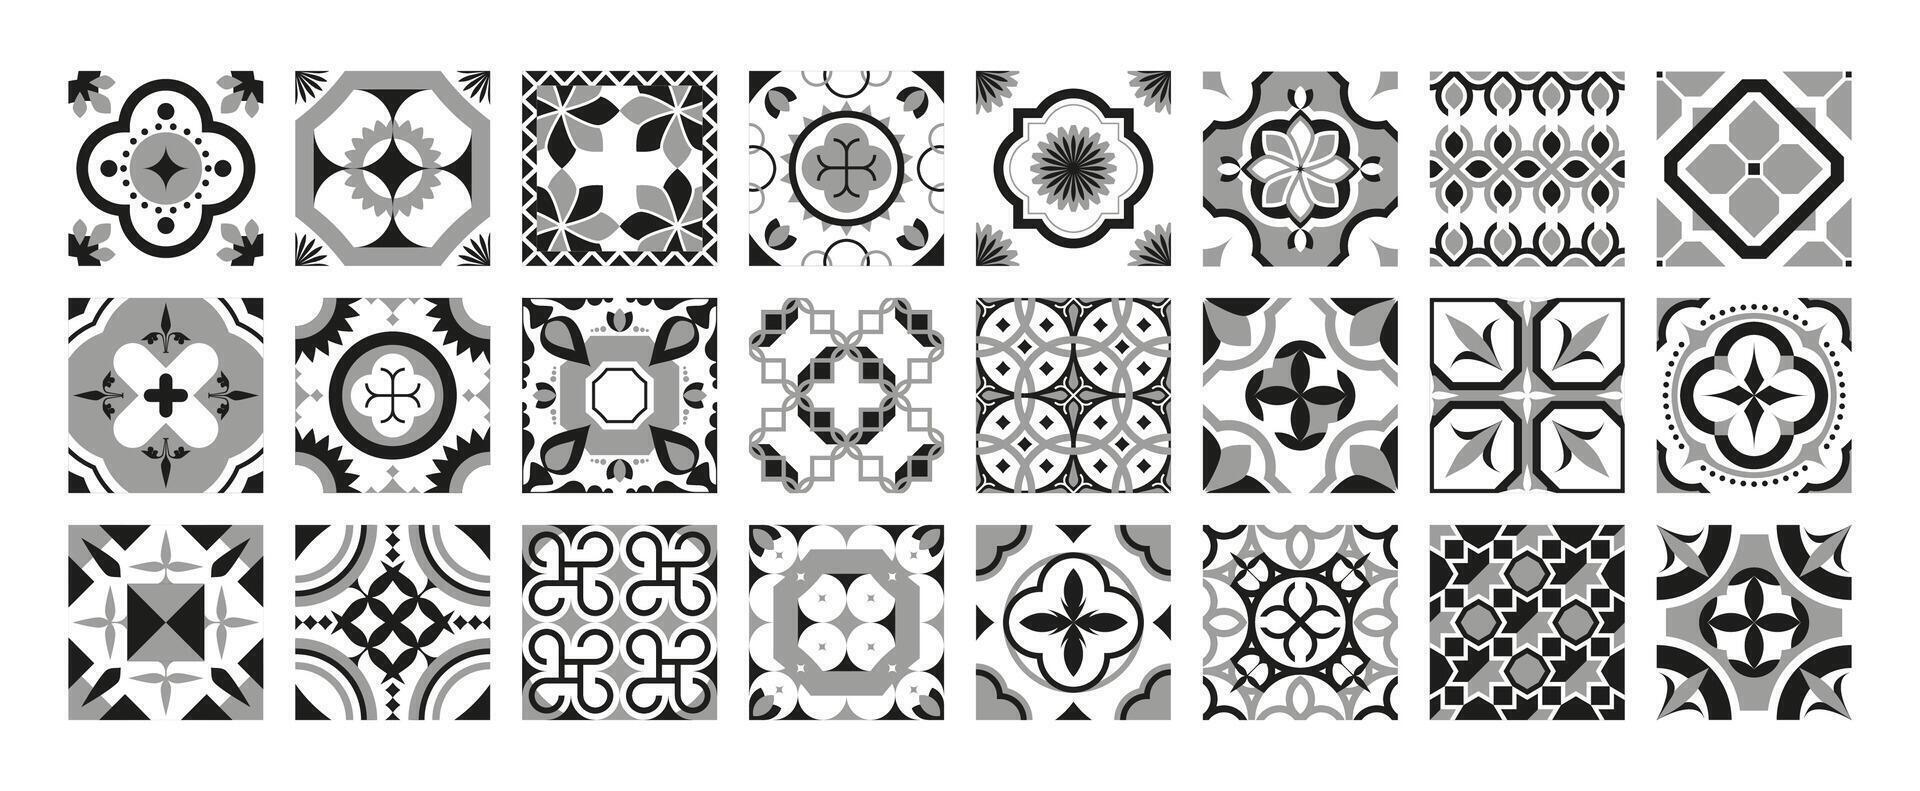 sier- zwart tegels. Portugal traditioneel meetkundig mozaïek- keramisch ontwerp, decoratief lapwerk oppervlakte middellandse Zee motief. vector verzameling